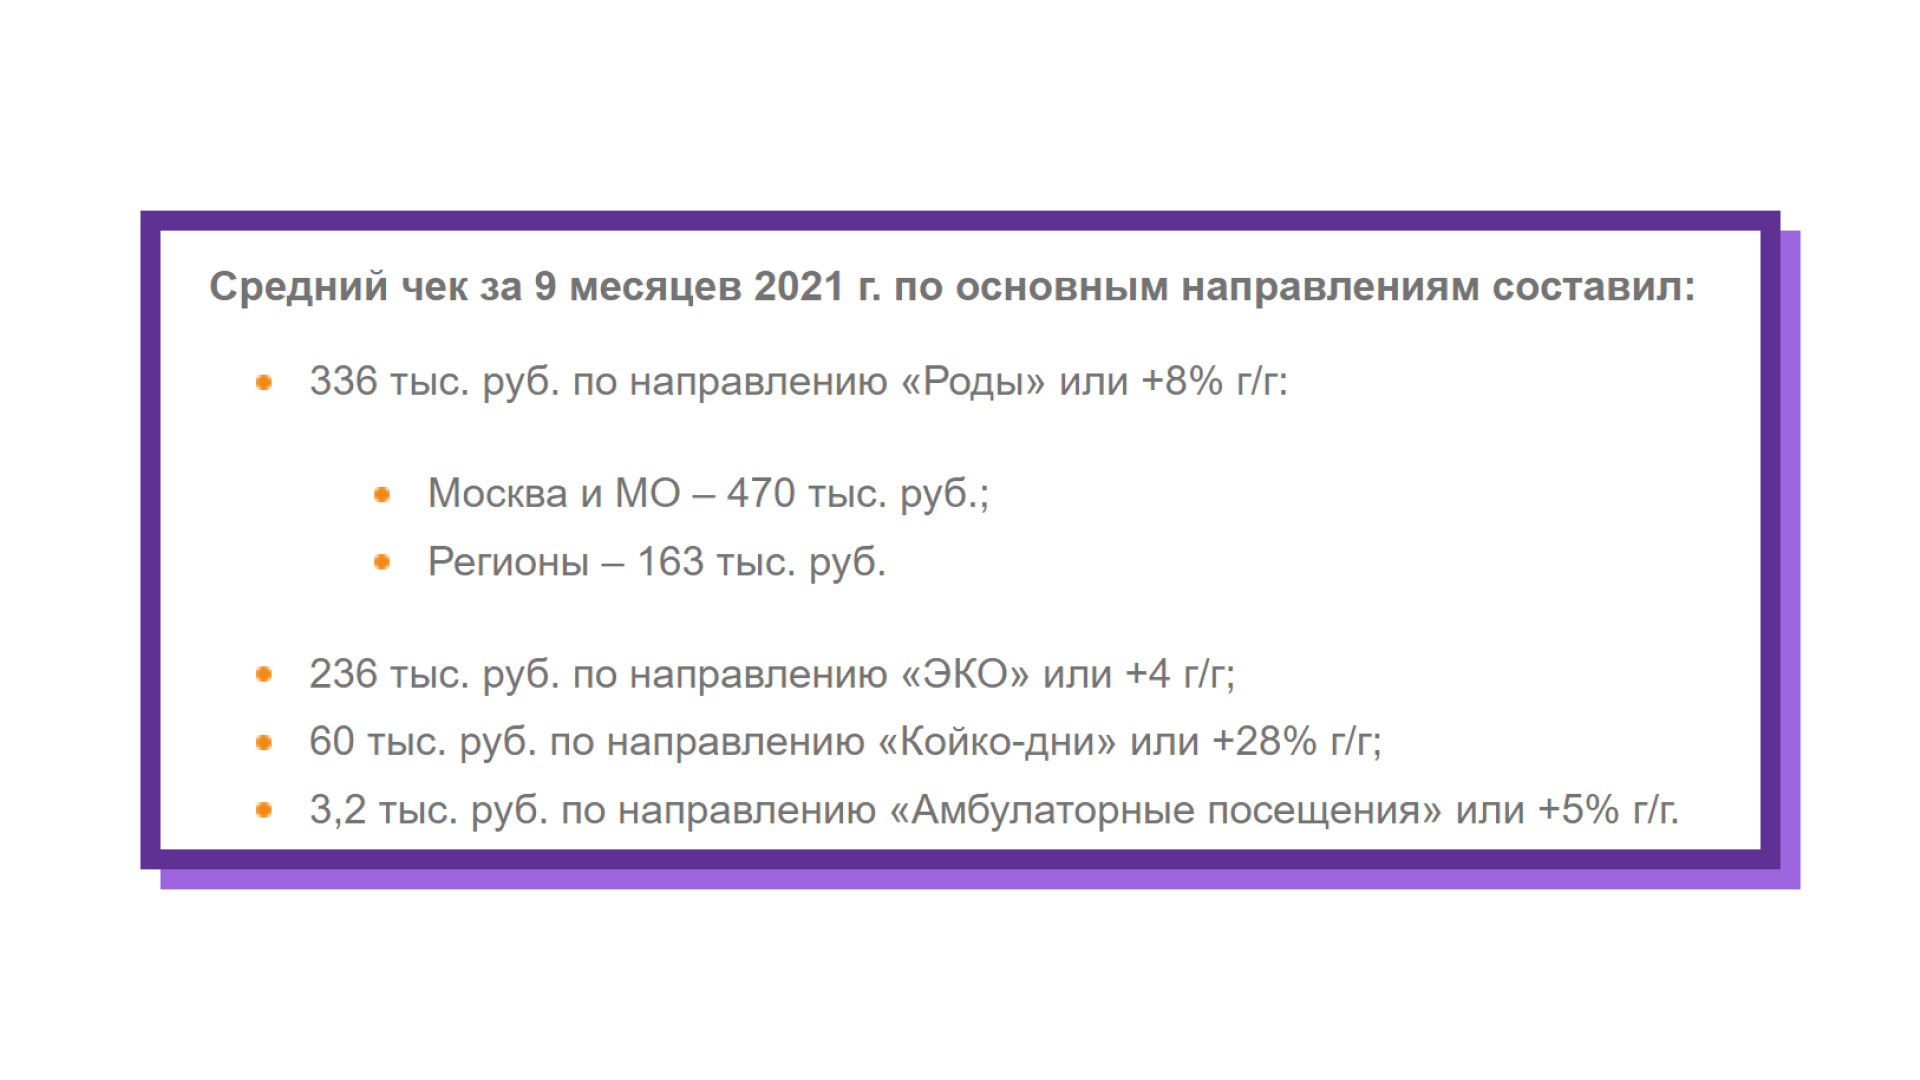 7 14. alcoa дивиденды 2021 дата выплаты. 